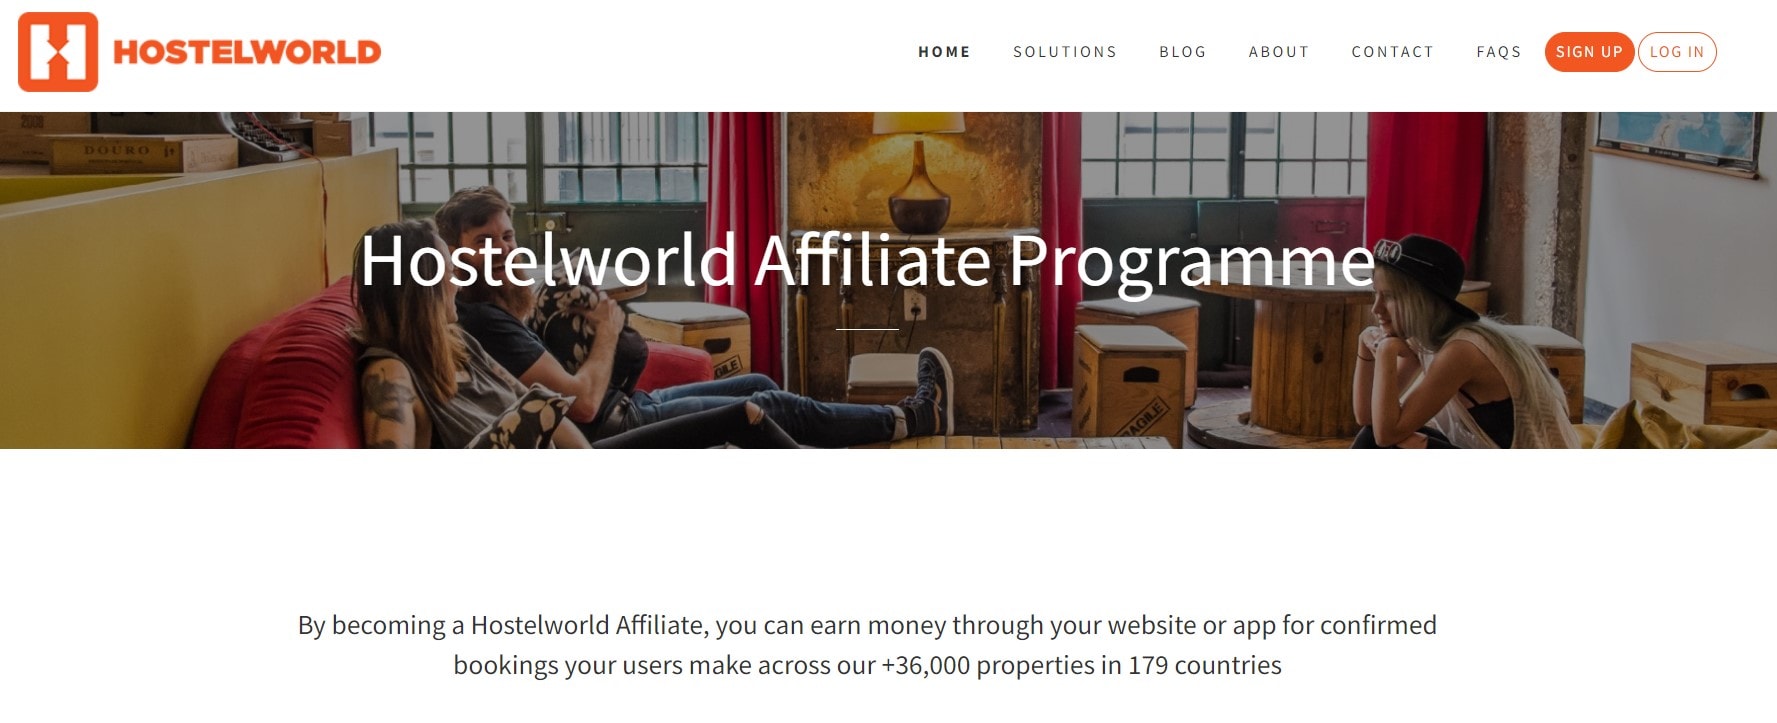 HostelWorld affiliate programs